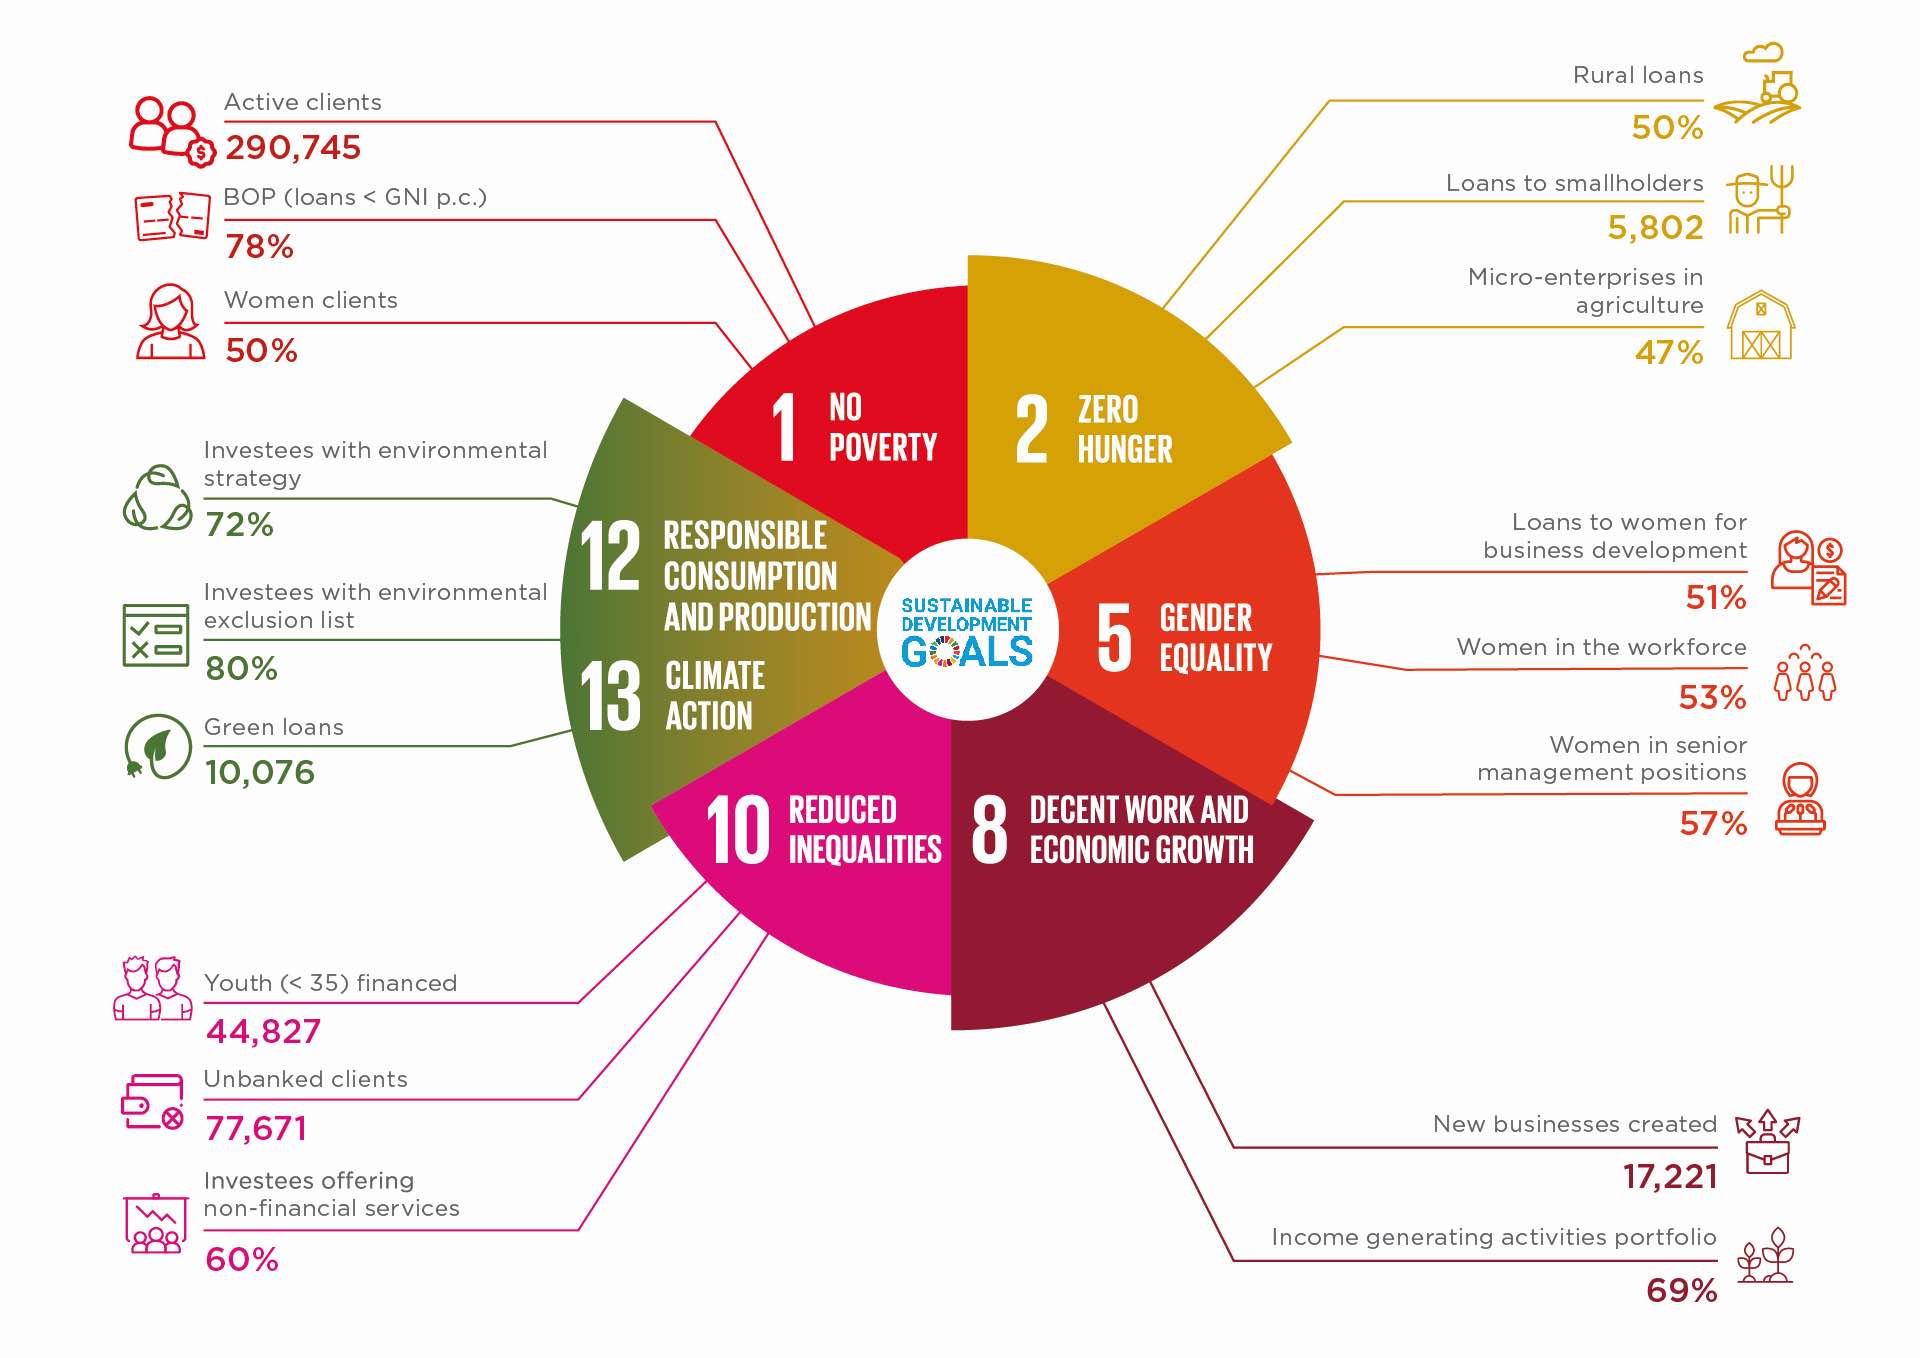 Impactresultaten en SDG's inpuls